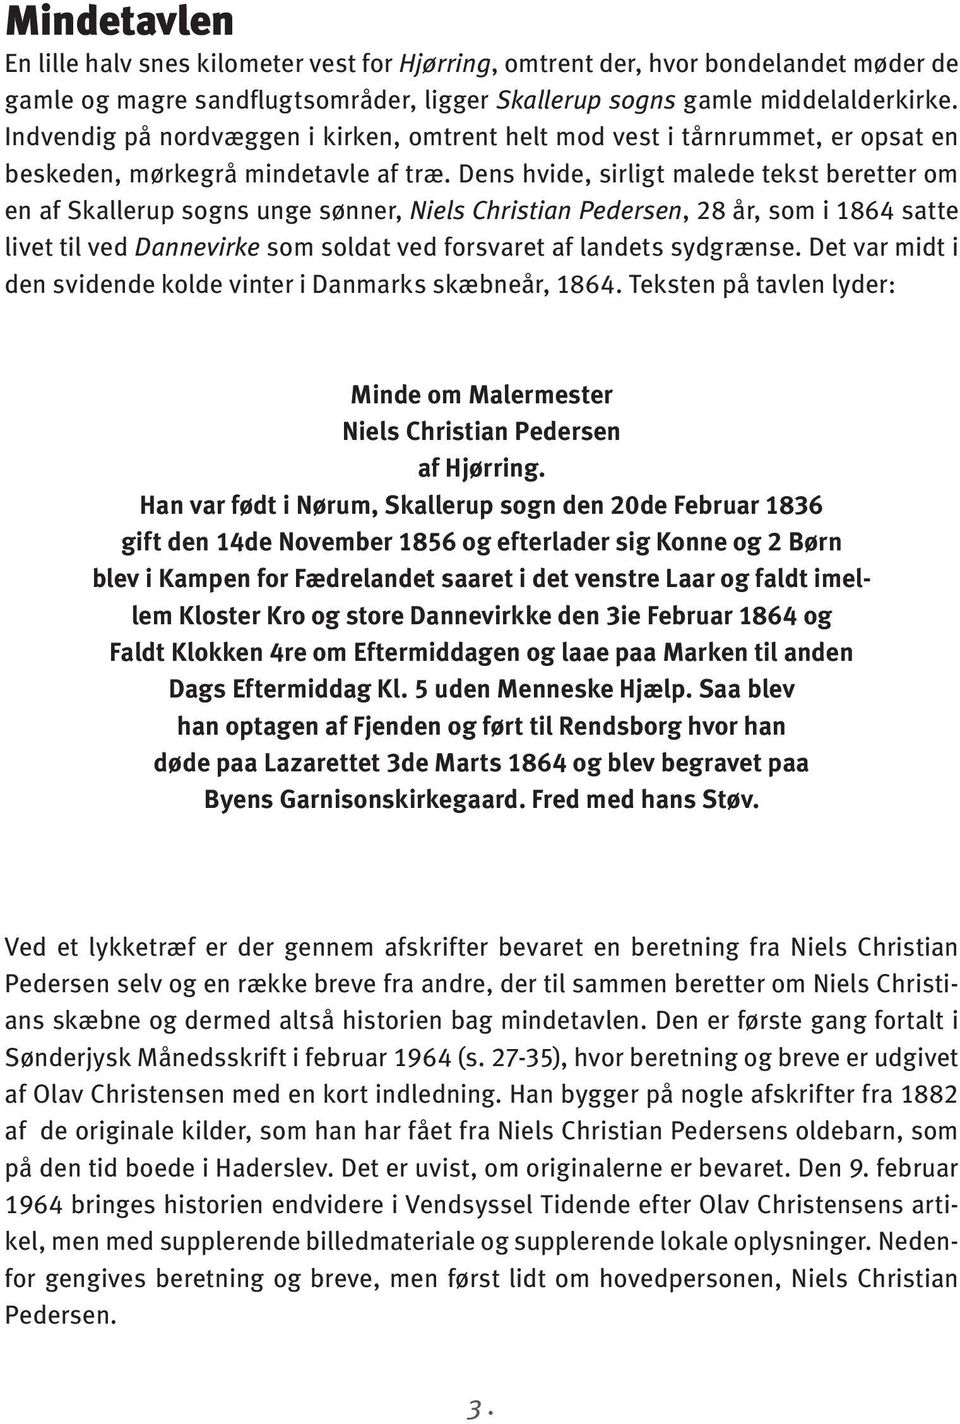 Dens hvide, sirligt malede tekst beretter om en af Skallerup sogns unge sønner, Niels Christian Pedersen, 28 år, som i 1864 satte livet til ved Dannevirke som soldat ved forsvaret af landets